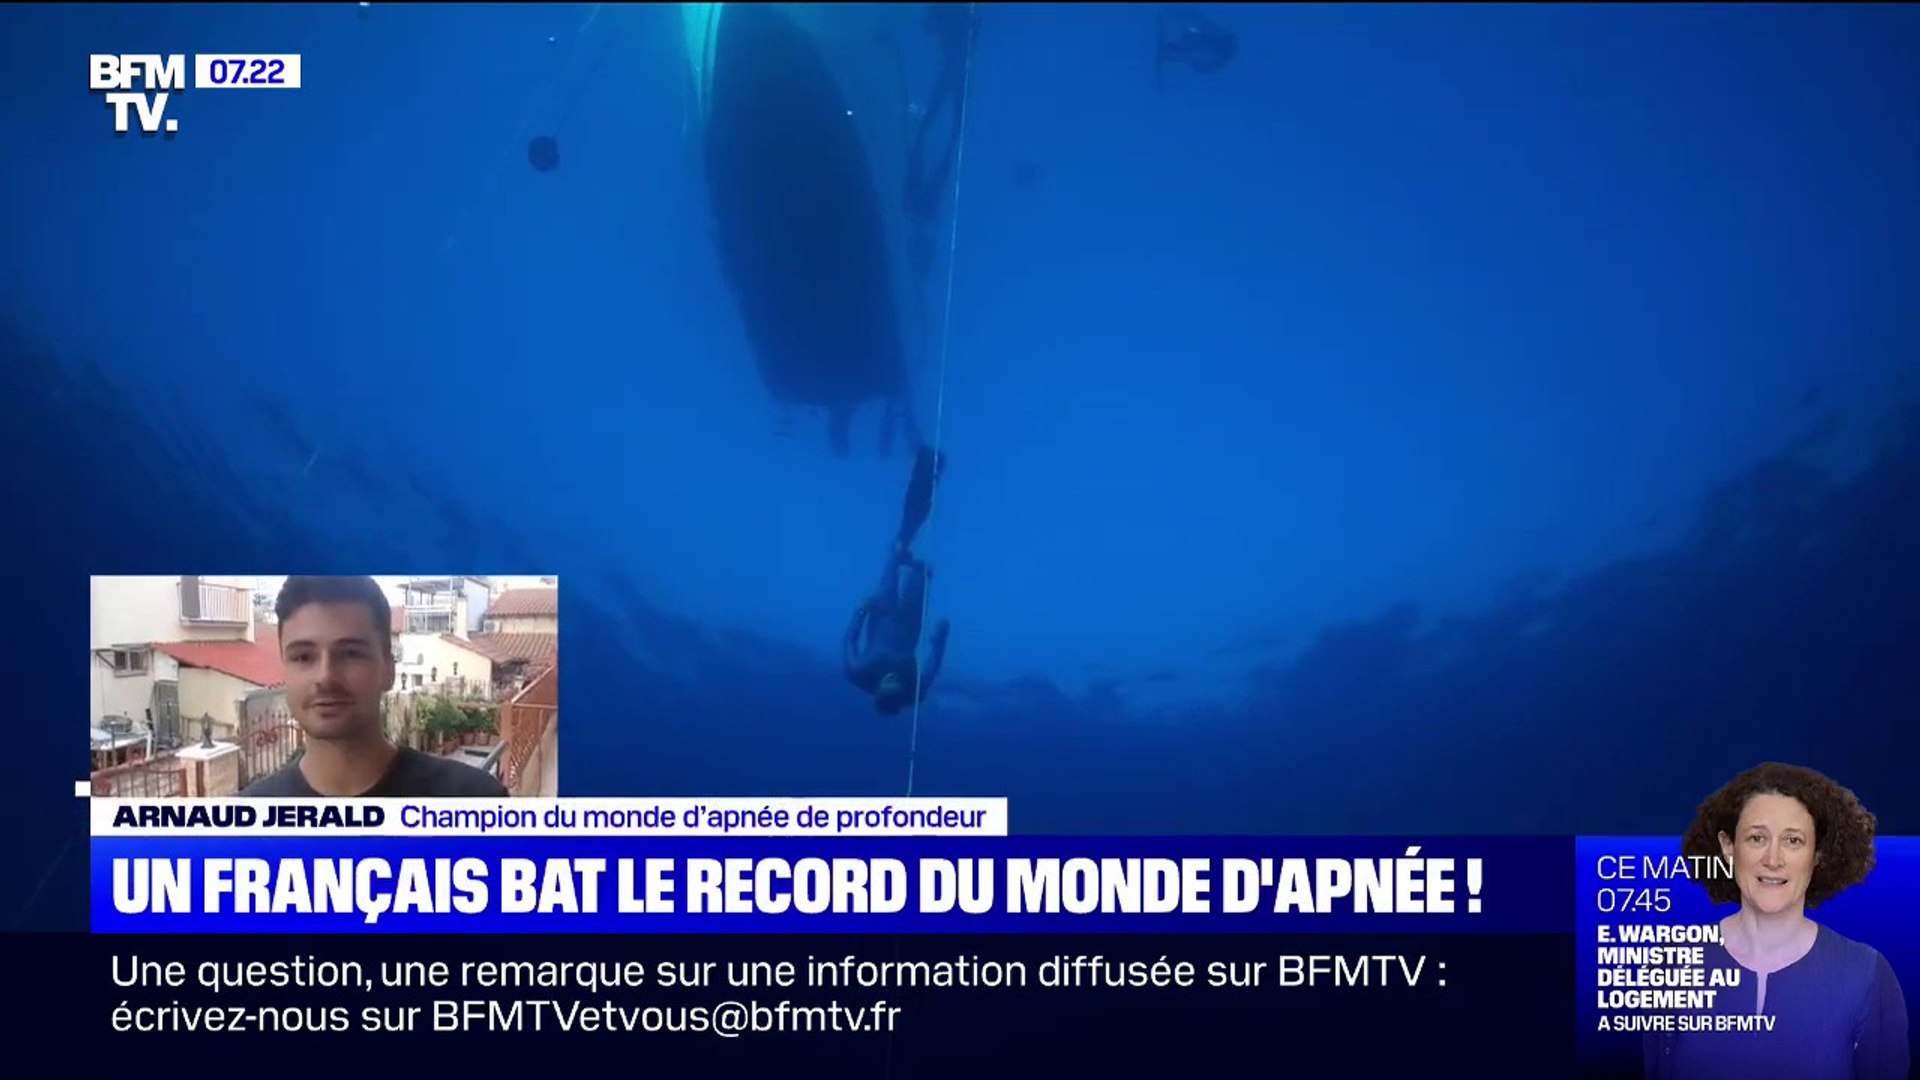 Le Français Arnaud Jérald bat un record du monde d'apnée à 112 mètres de  profondeur - Vidéo Dailymotion